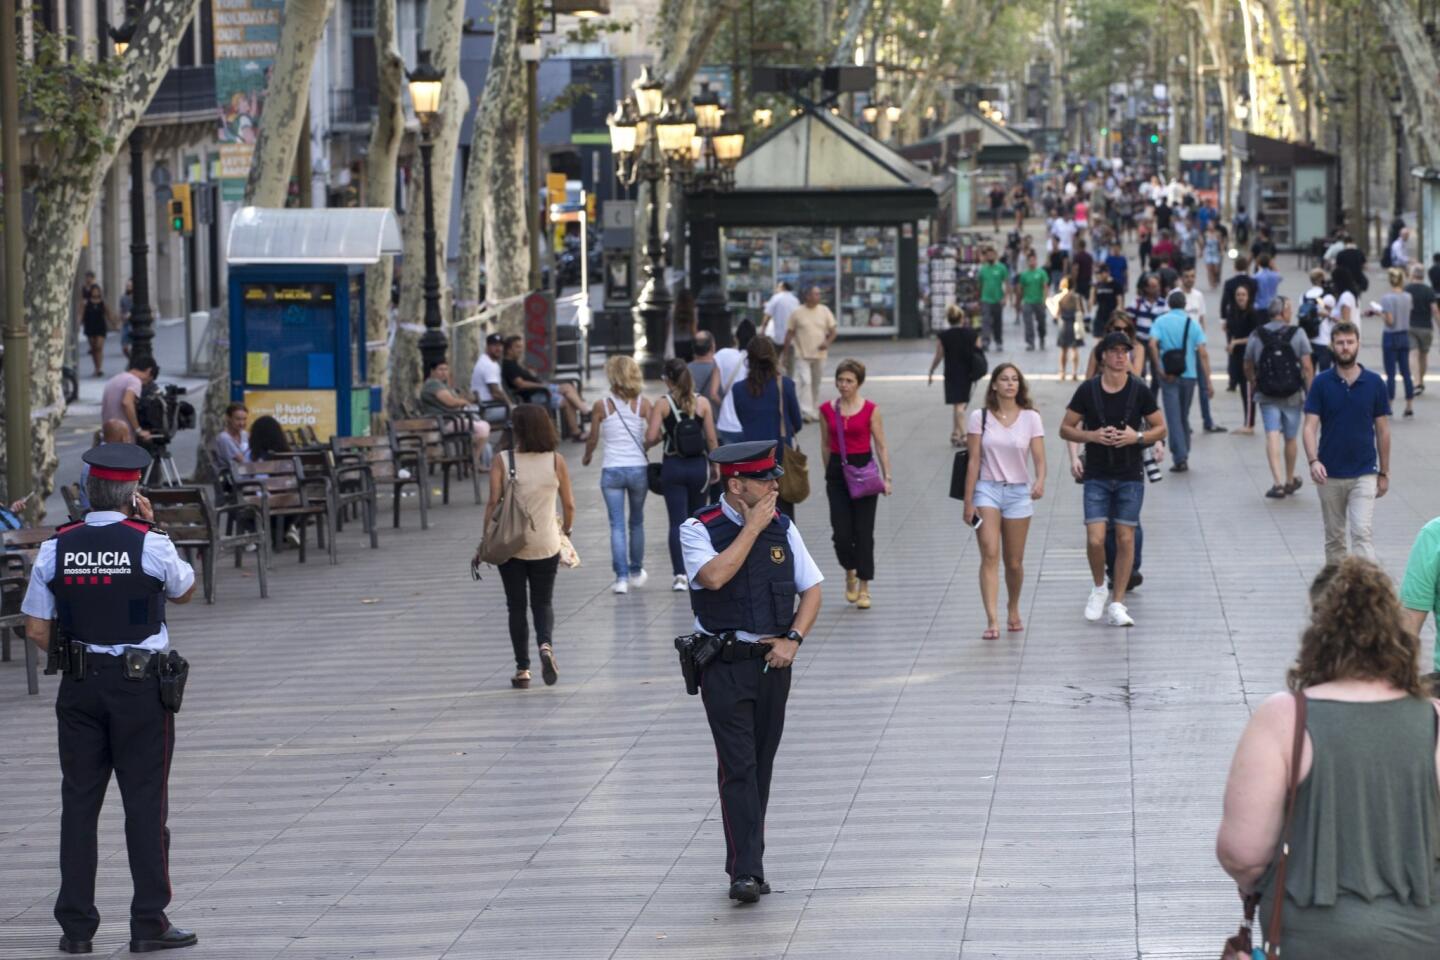 Terror attacks in Spain